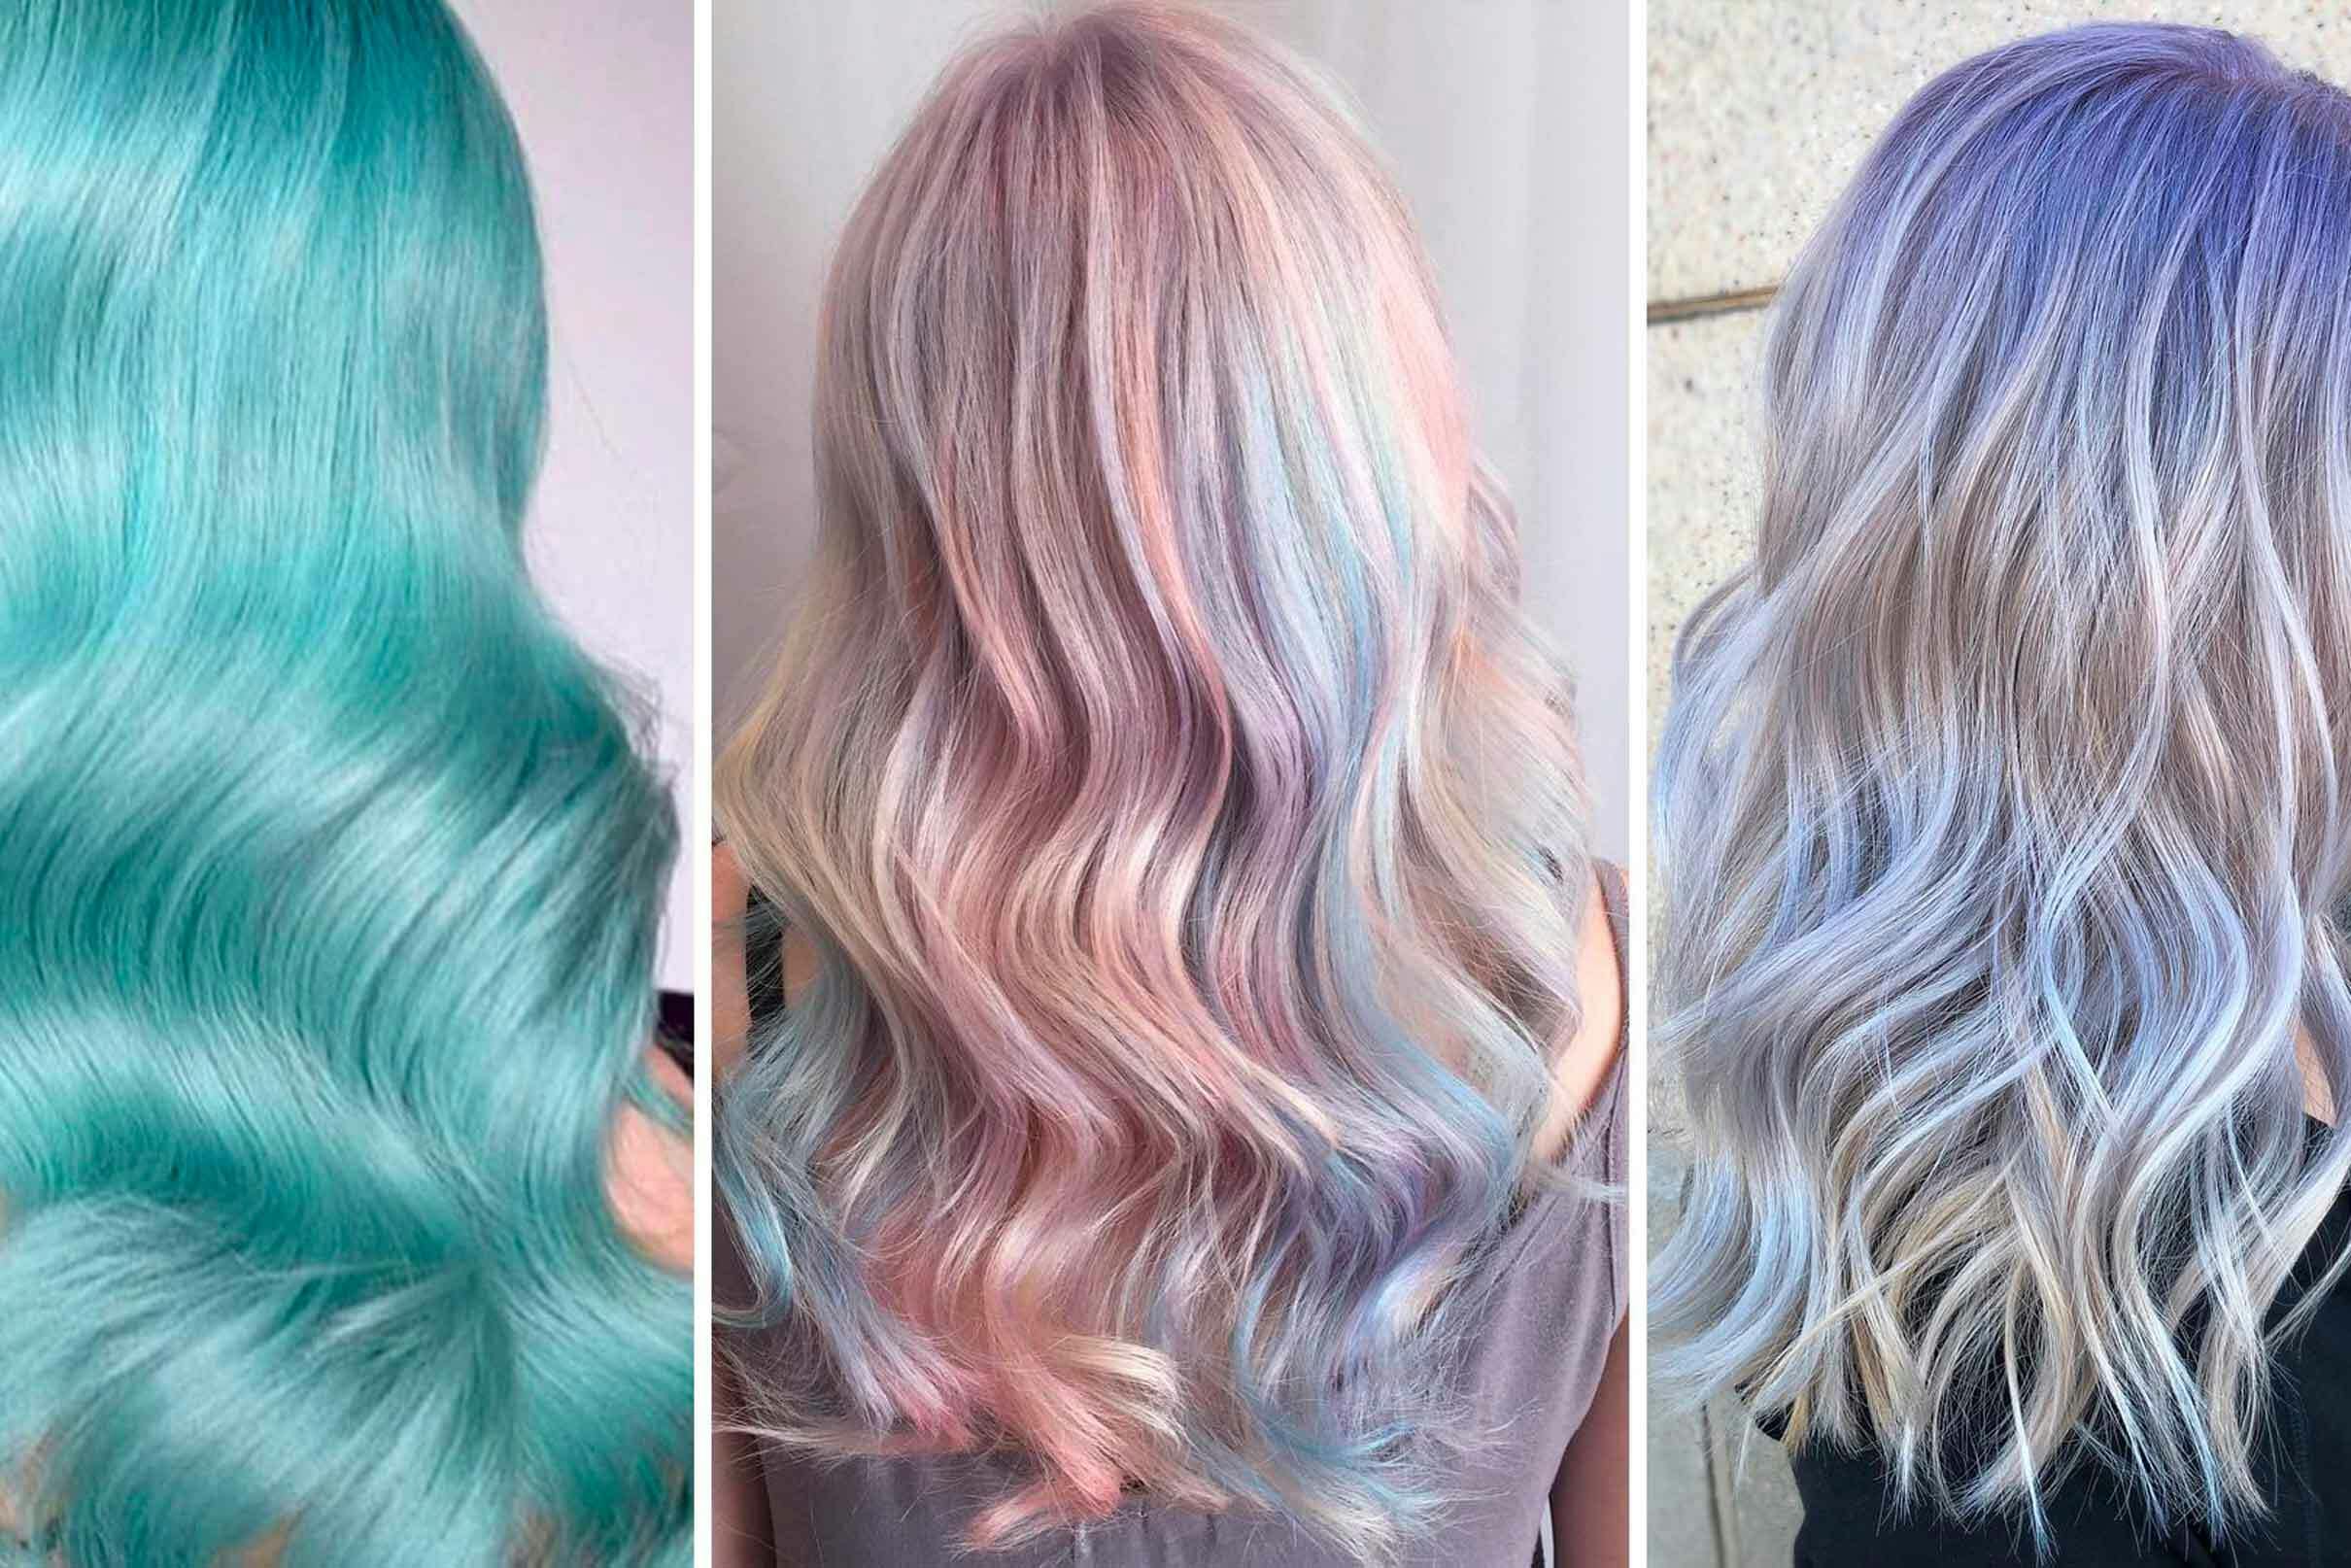 Pastelfarver er en smuk måde at shine håret op på.